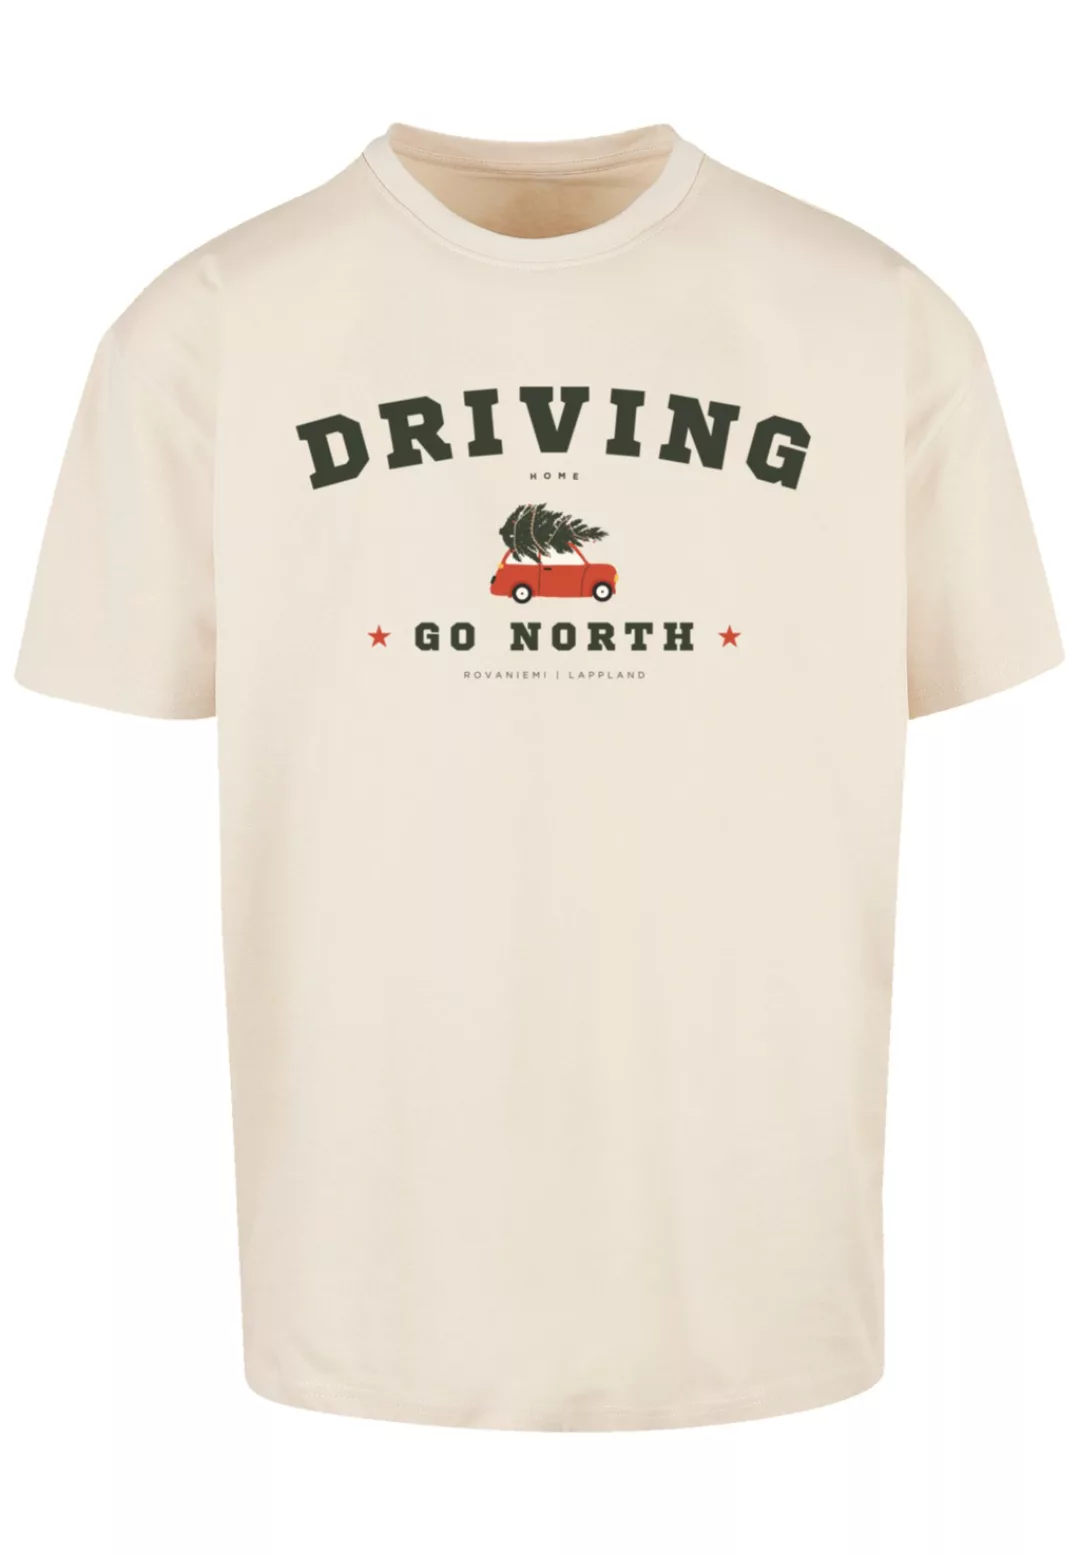 F4NT4STIC T-Shirt "Driving Home Weihnachten", Weihnachten, Geschenk, Logo günstig online kaufen